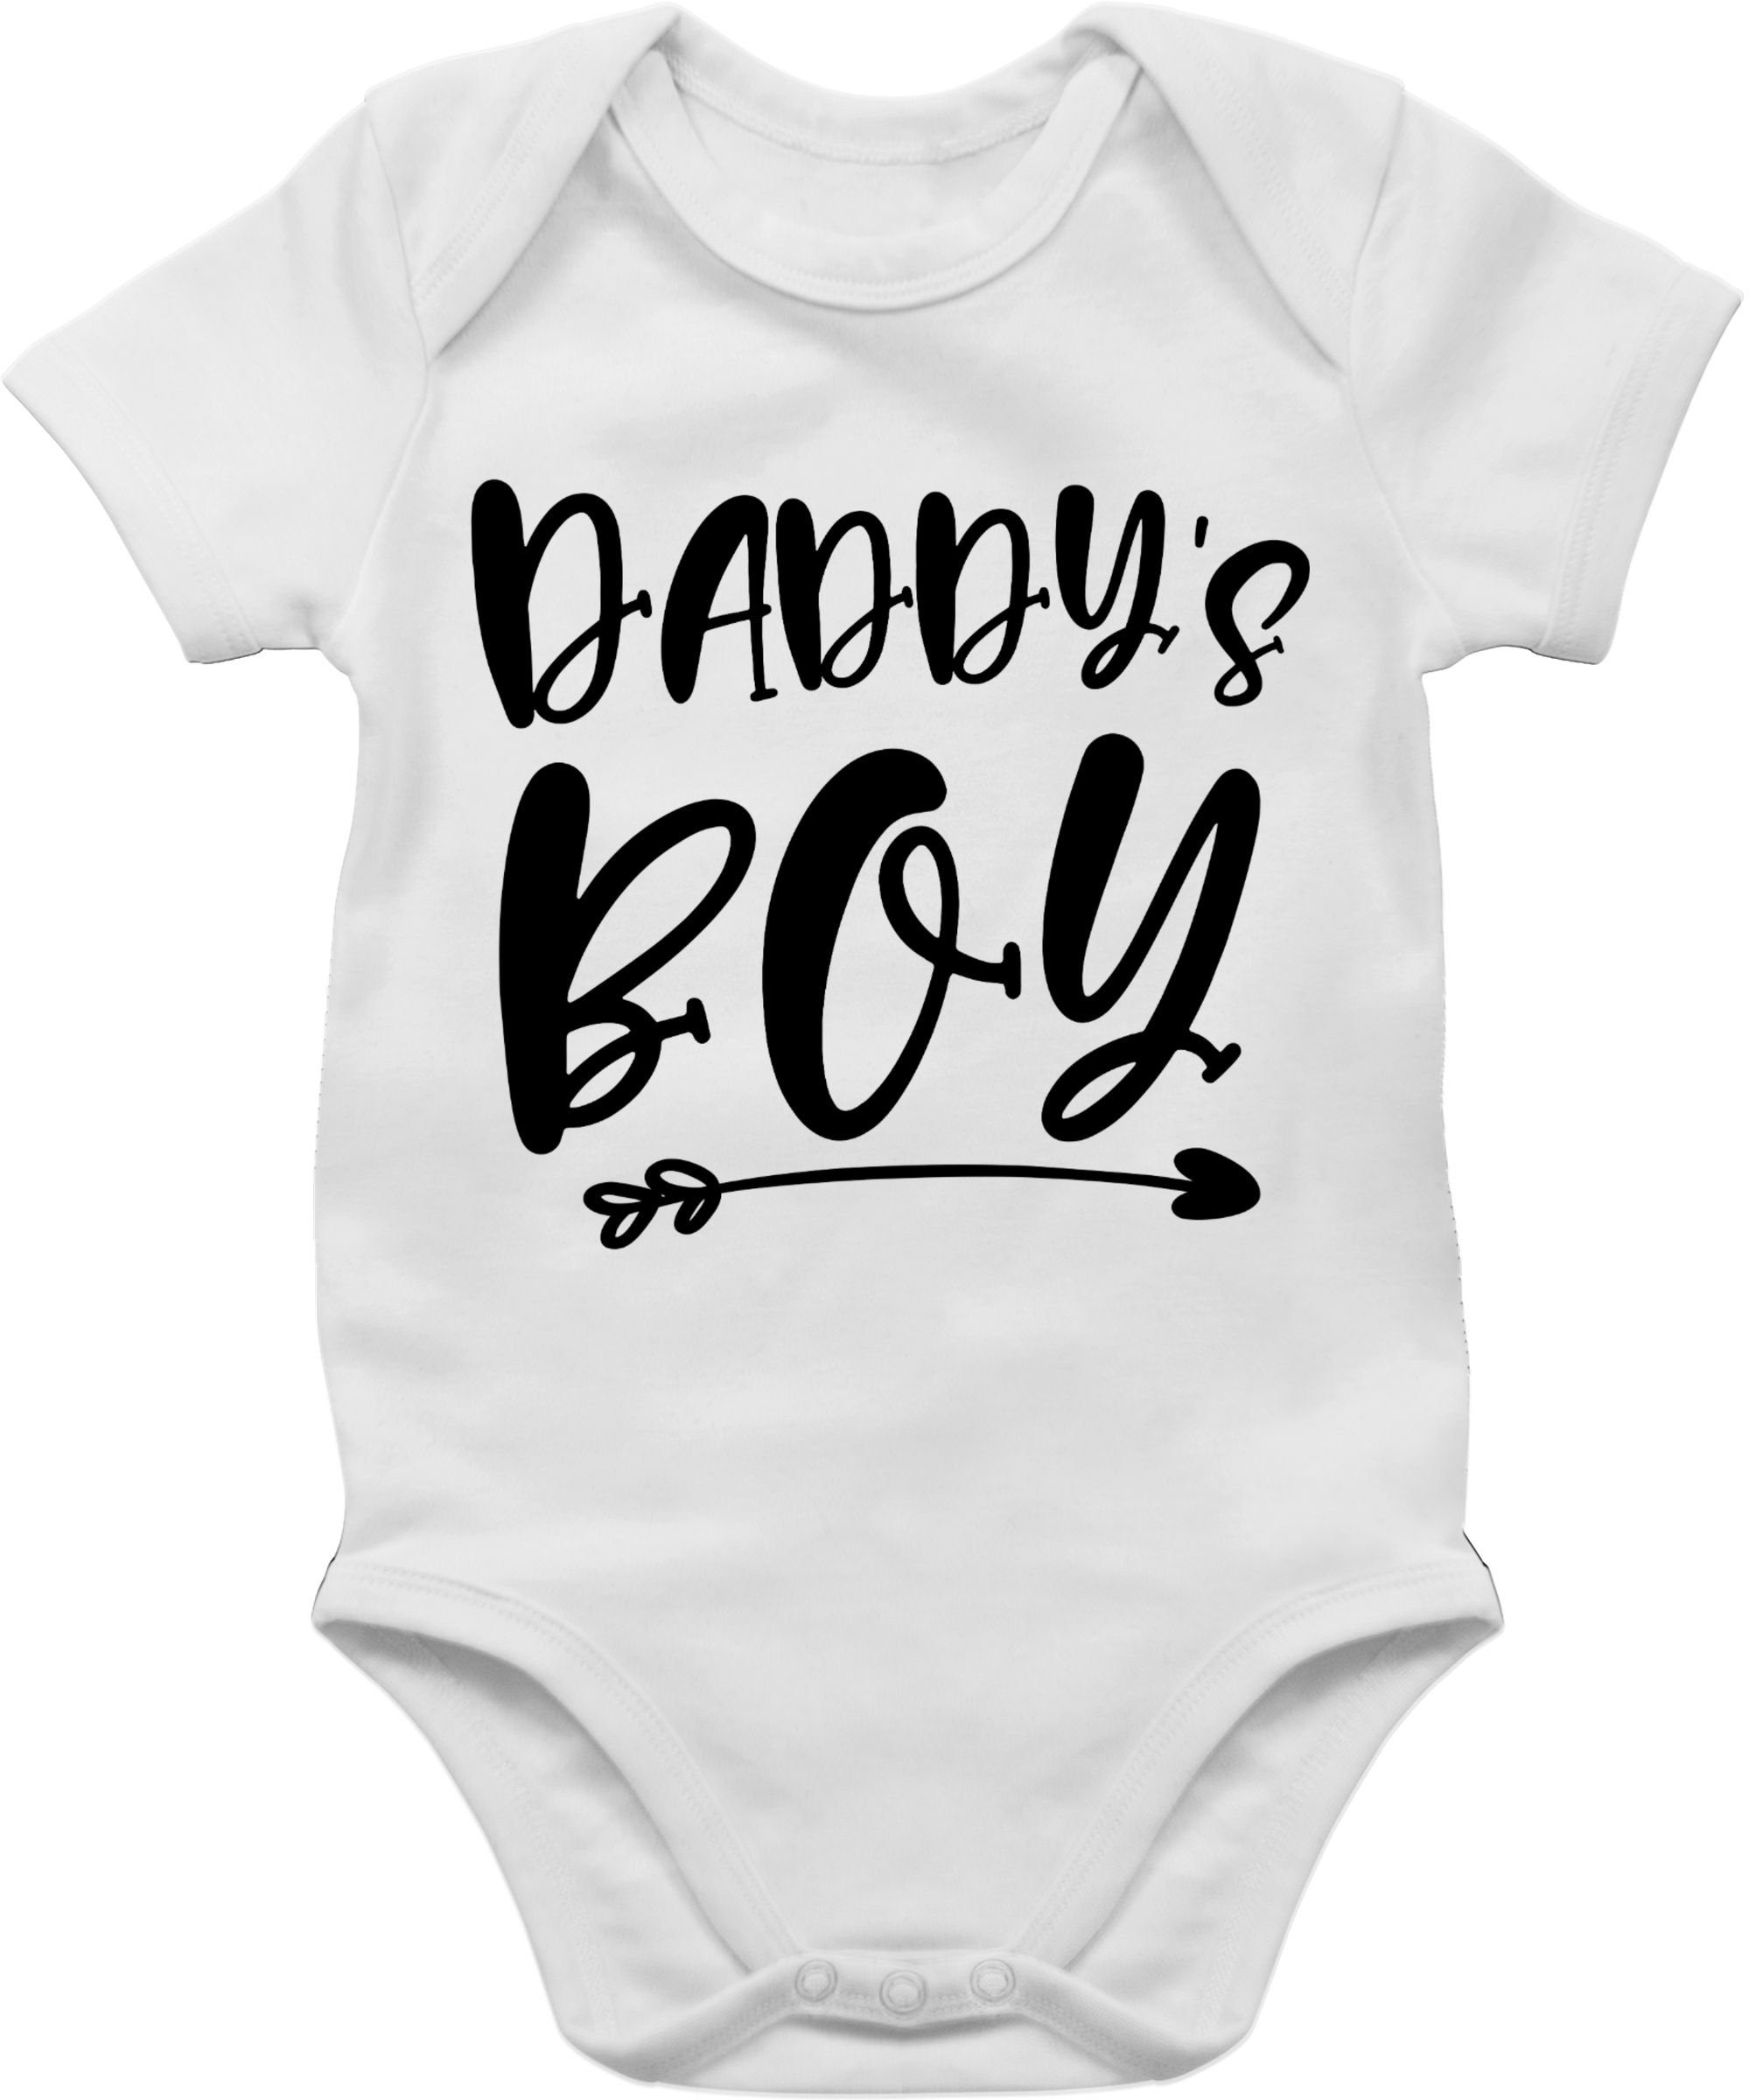 Baby Geschenk Shirtracer Weiß Shirtbody Boy Daddys 2 Vatertag